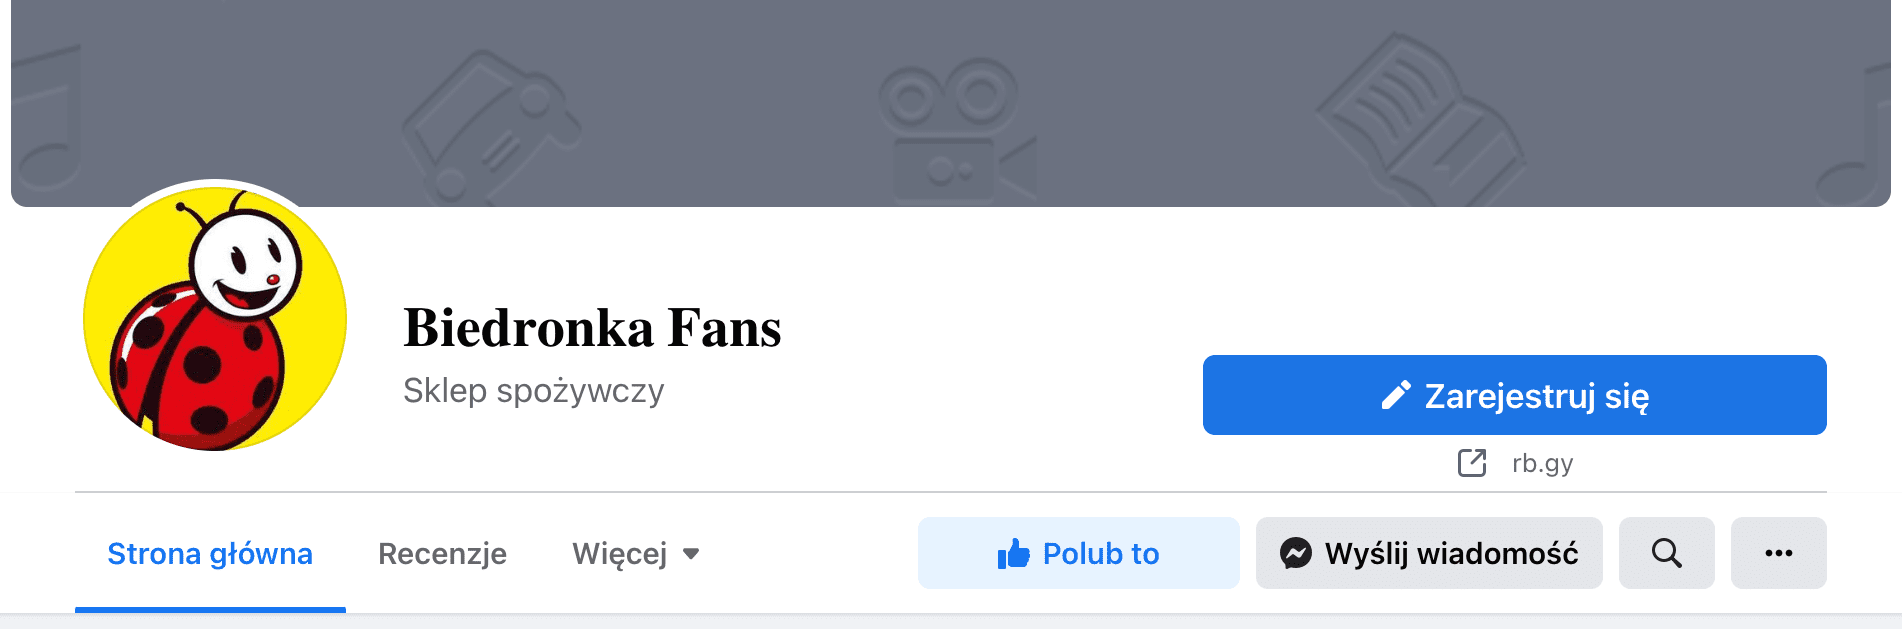 Zrzut ekranu nagłówka profilu Biedronka Fans na Facebooku. Profil posłużył się logiem marki. W tle nie ma żadnego zdjęcia.